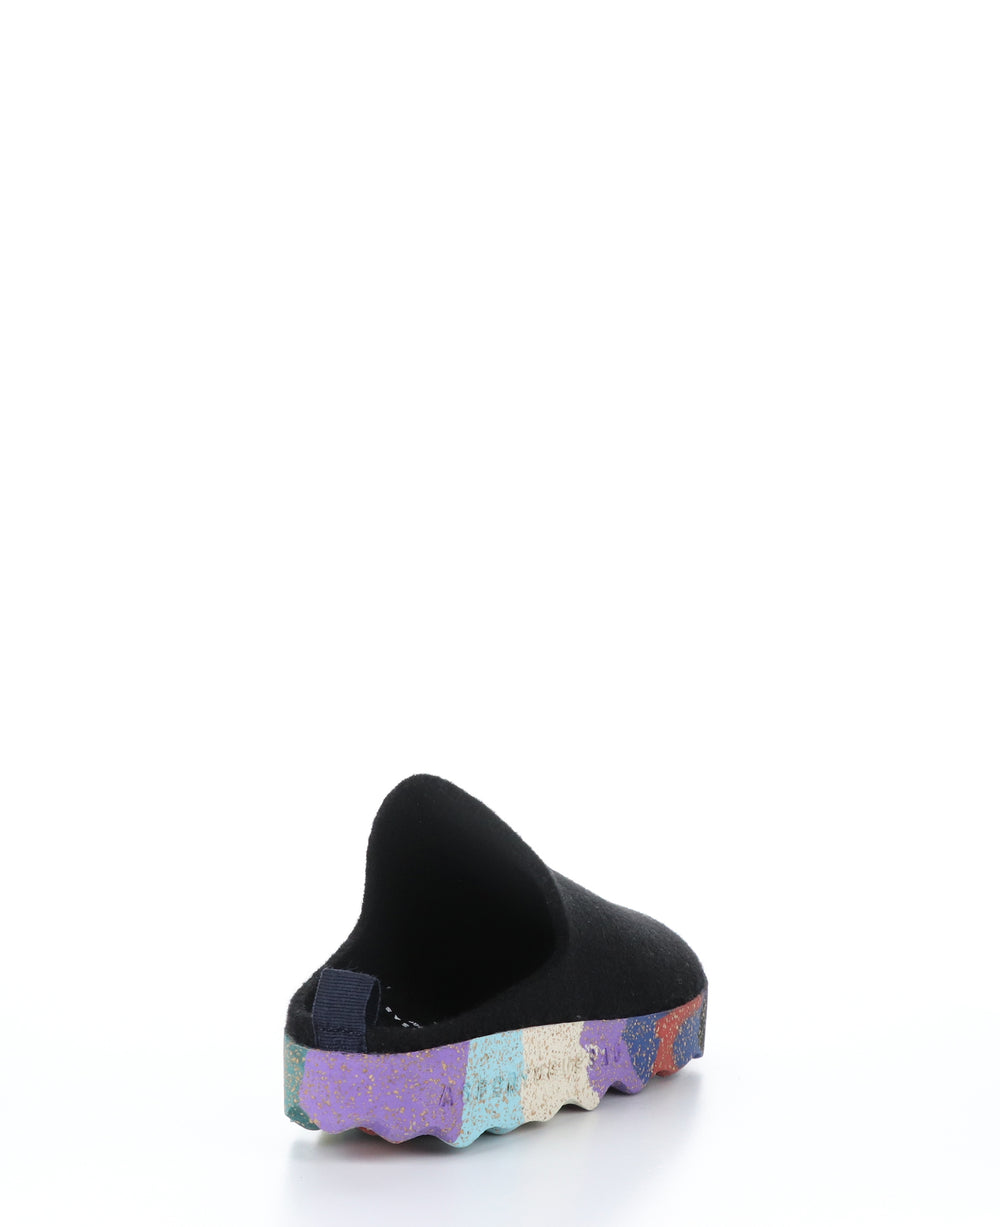 COME023ASP Black/Multi Round Toe Shoes